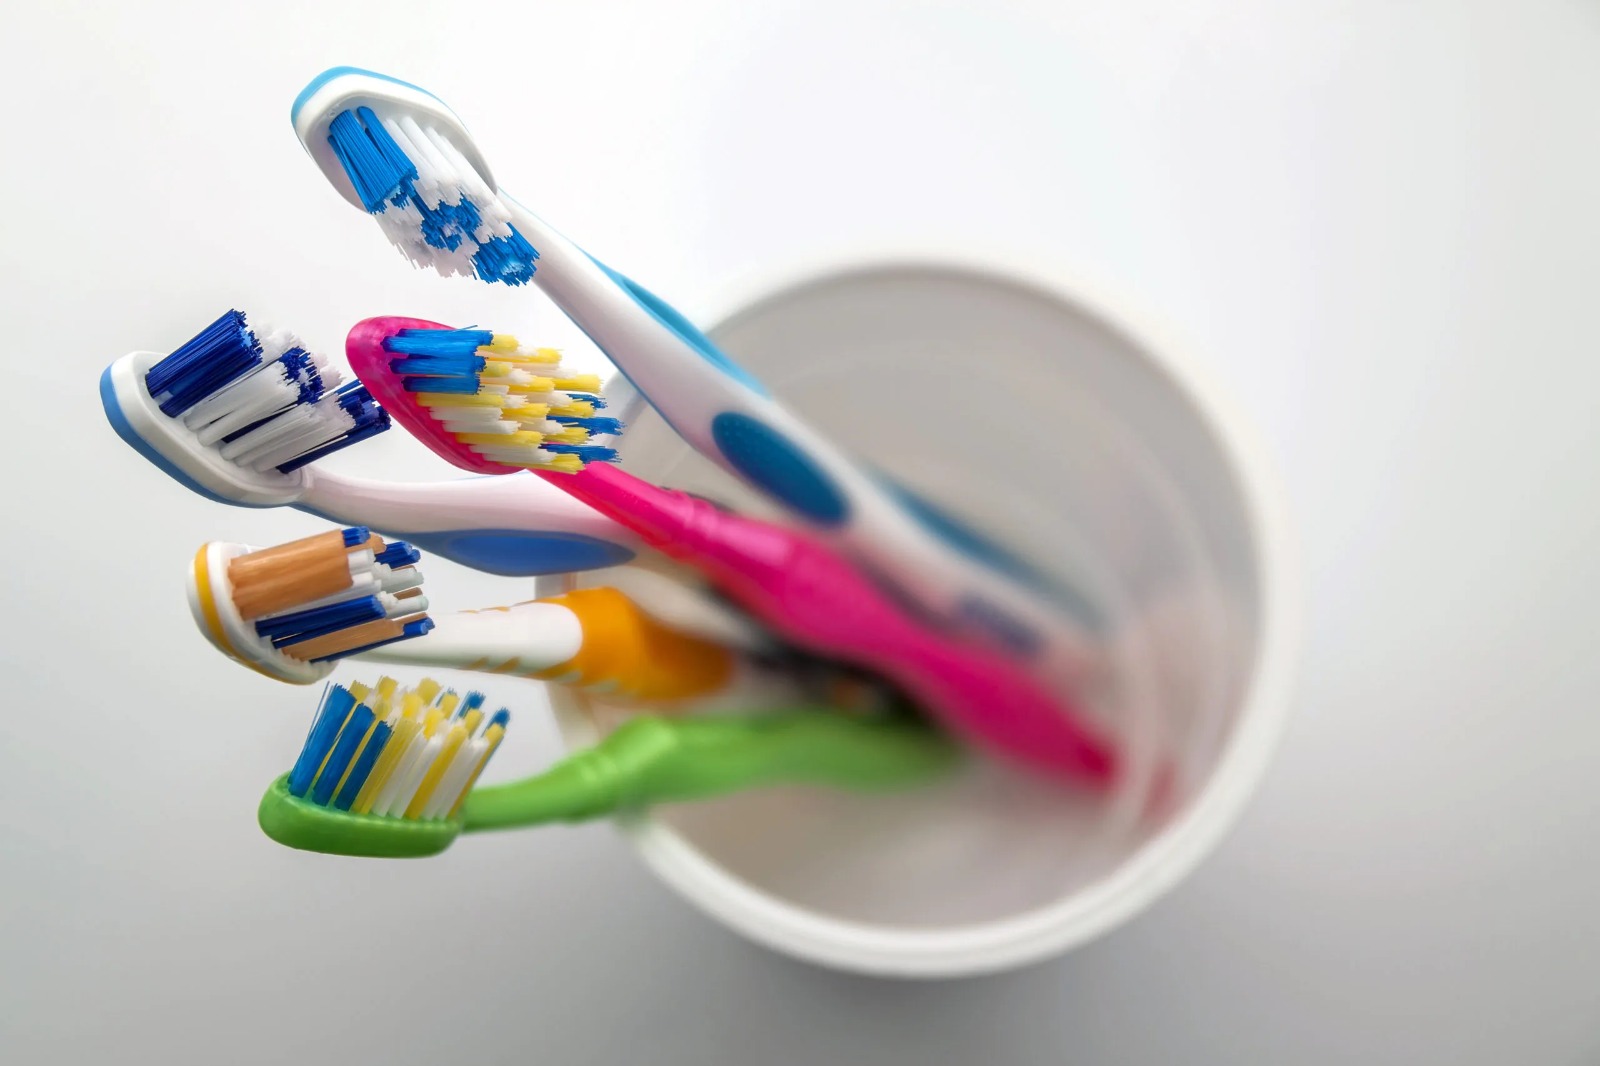 बाथरूम में एक साथ कभी नहीं रखना चाहिए Toothbrush, वजह जान आ जाएगी घिन - Ghamasan News